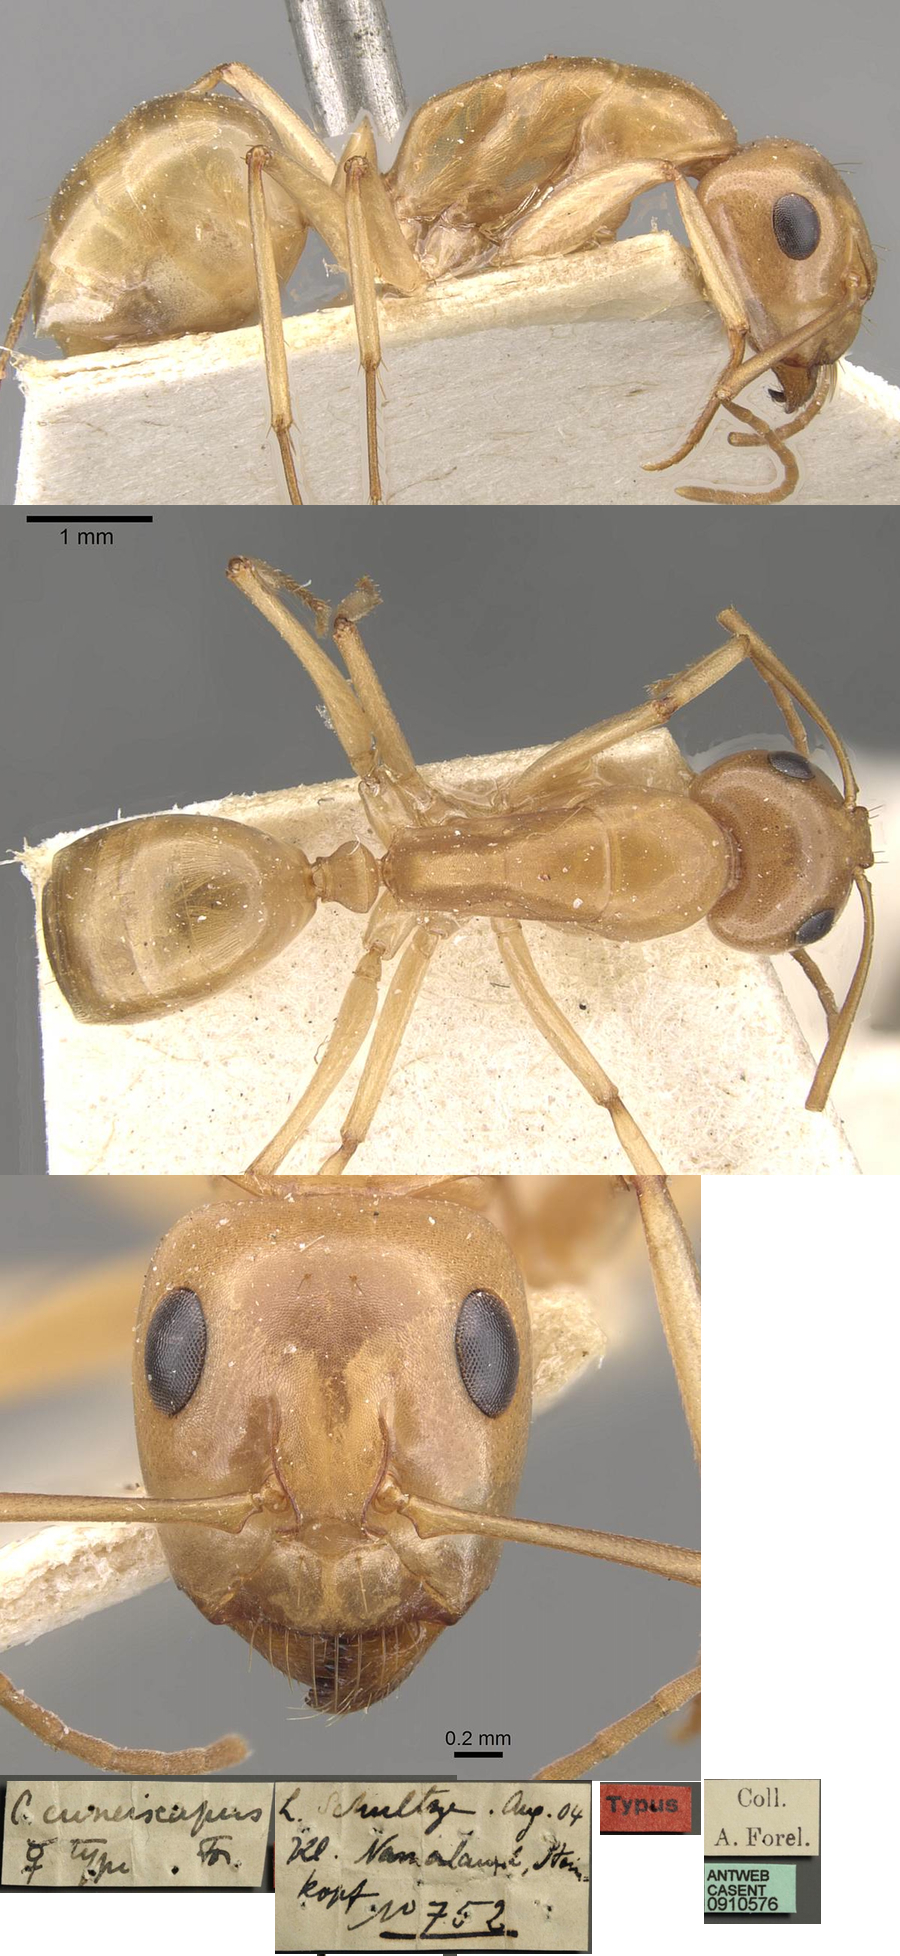 Camponotus cuneiscapus major